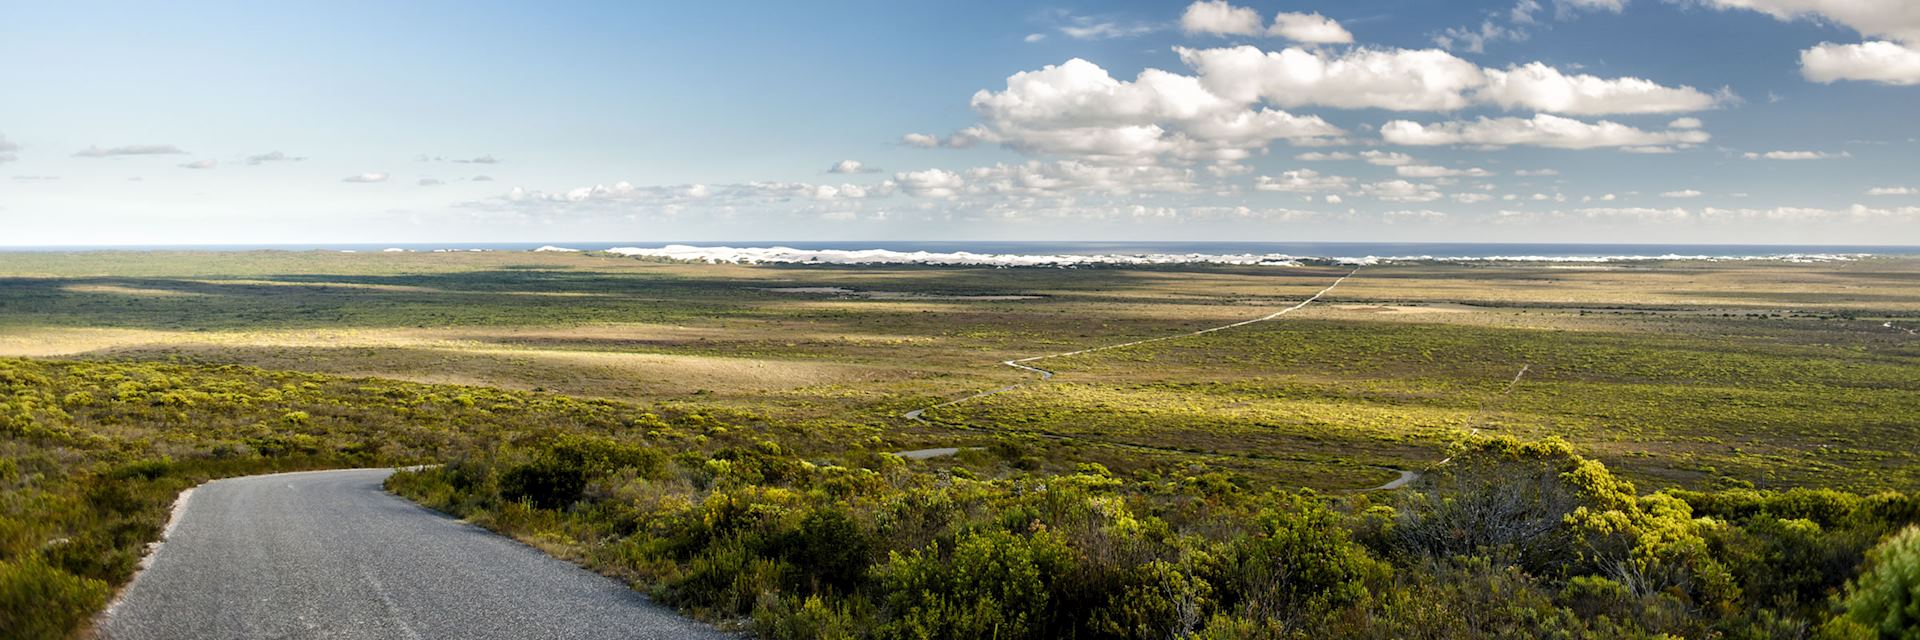 mandskab klart niveau Visit De Hoop Nature Reserve, South Africa | Audley Travel